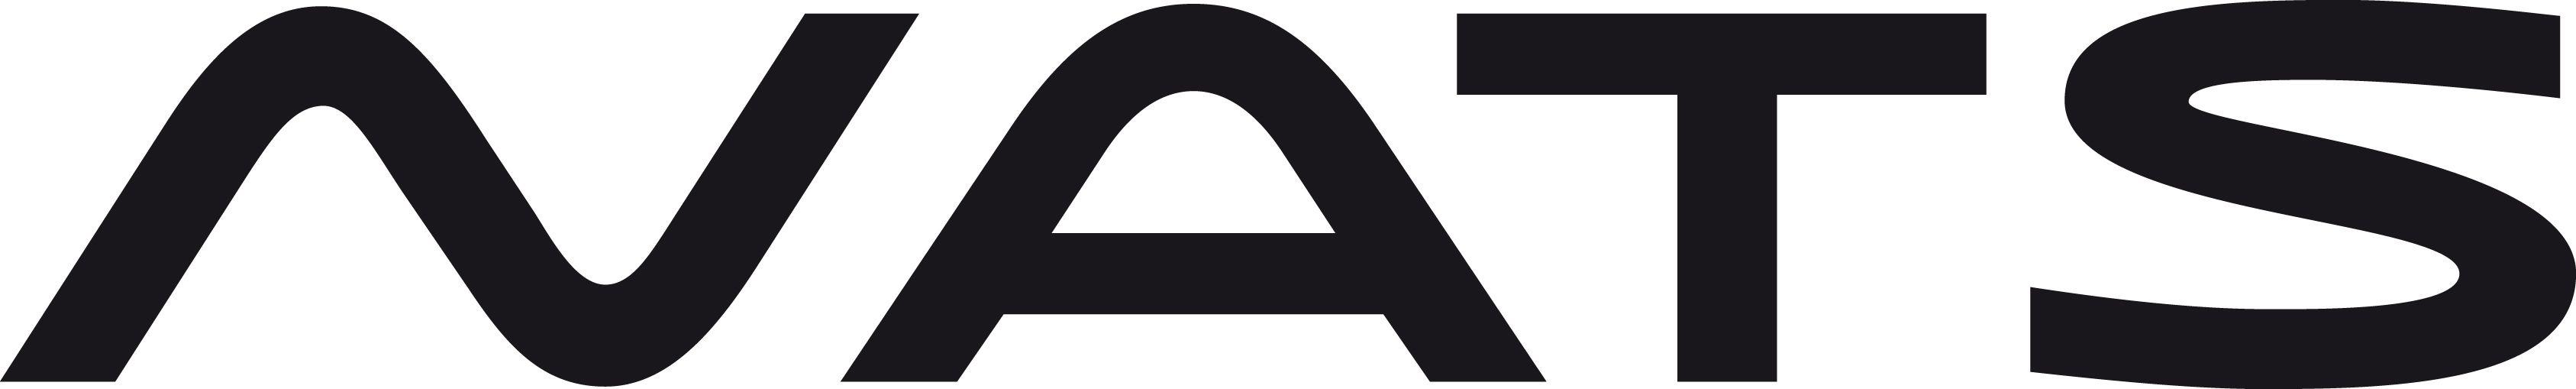 Nats Logo - Nats Logos